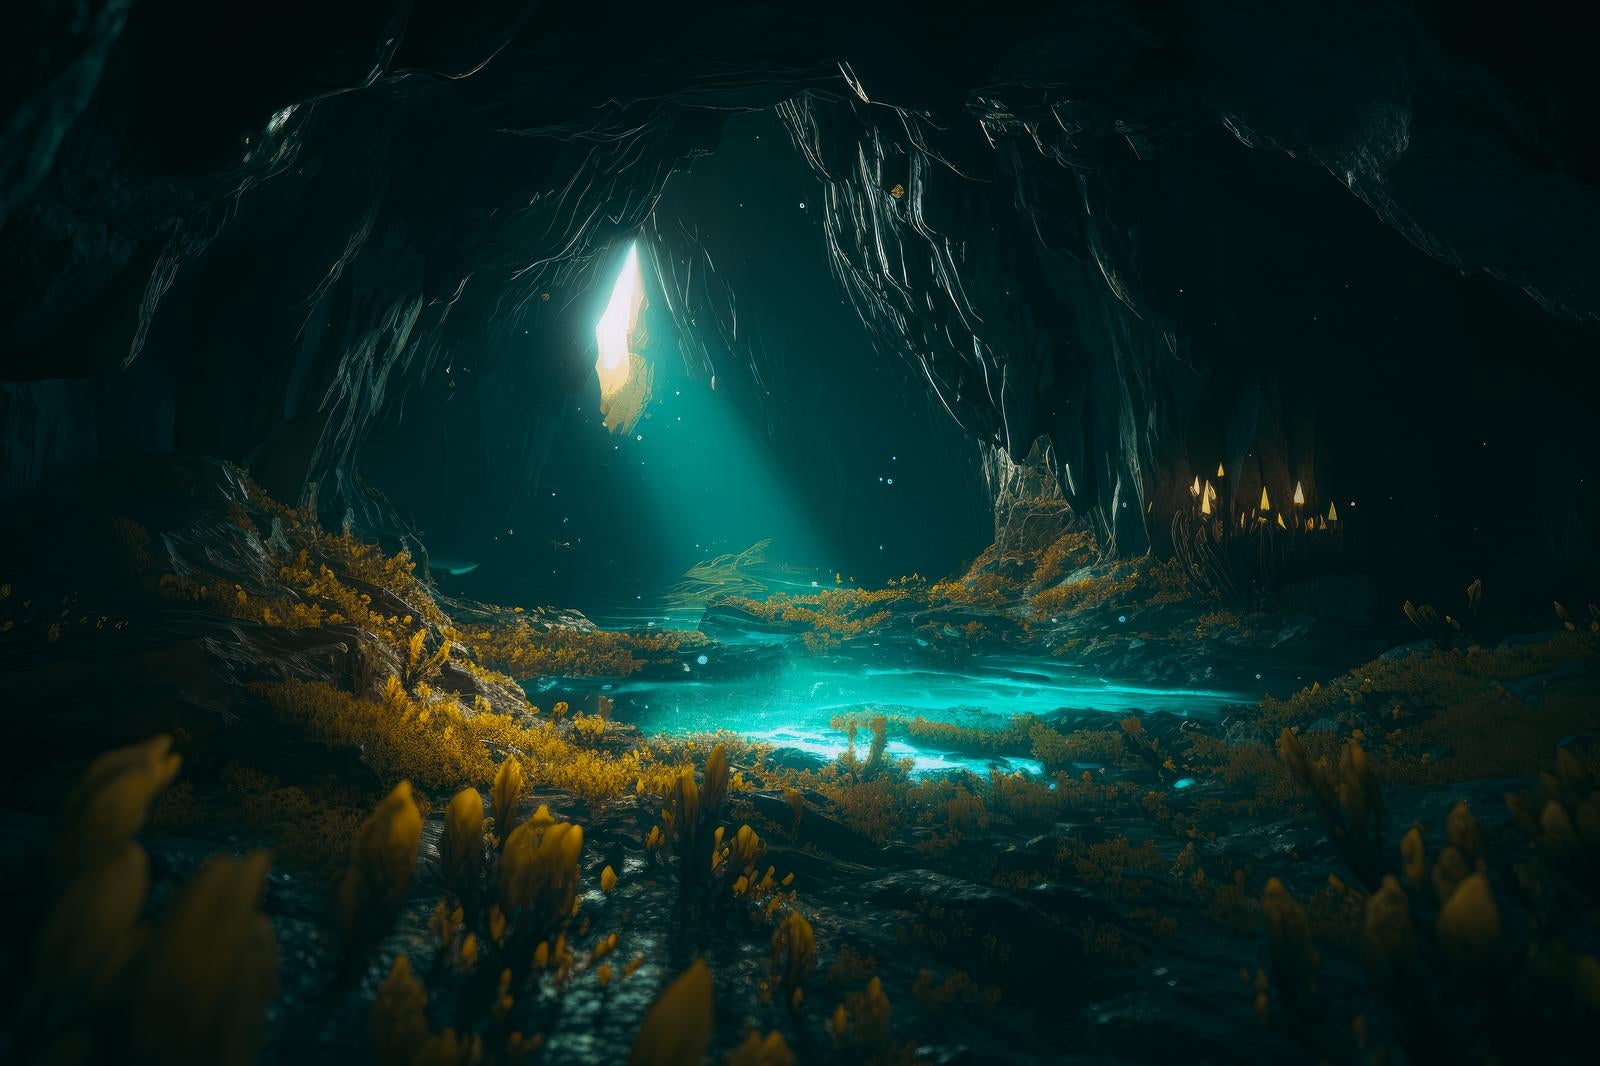 「洞窟の中に光が差し込む」の写真